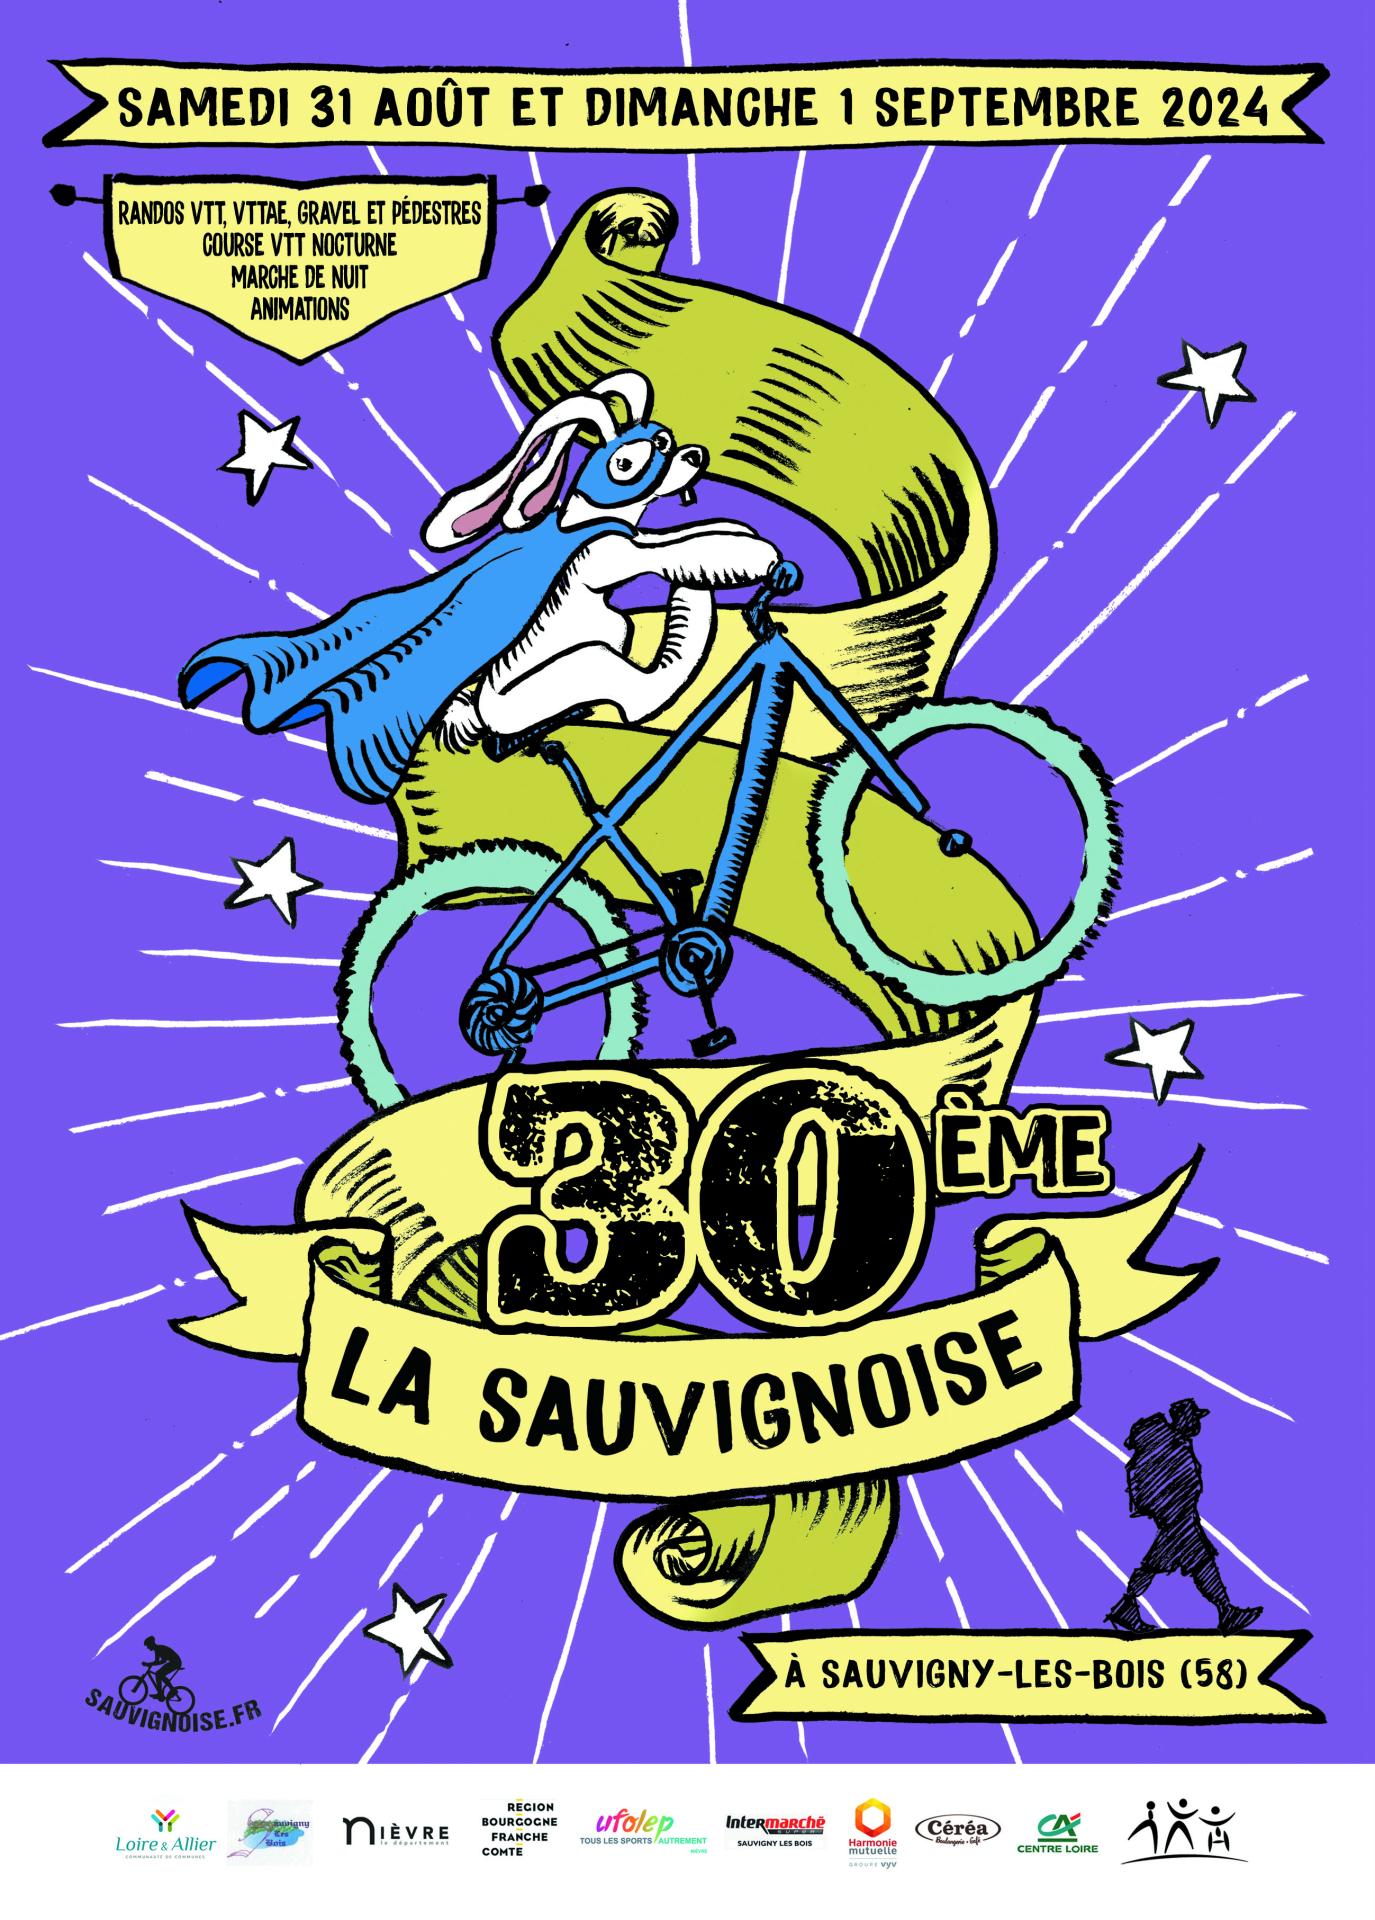 2024 sauvignoise affiche a4 officielle